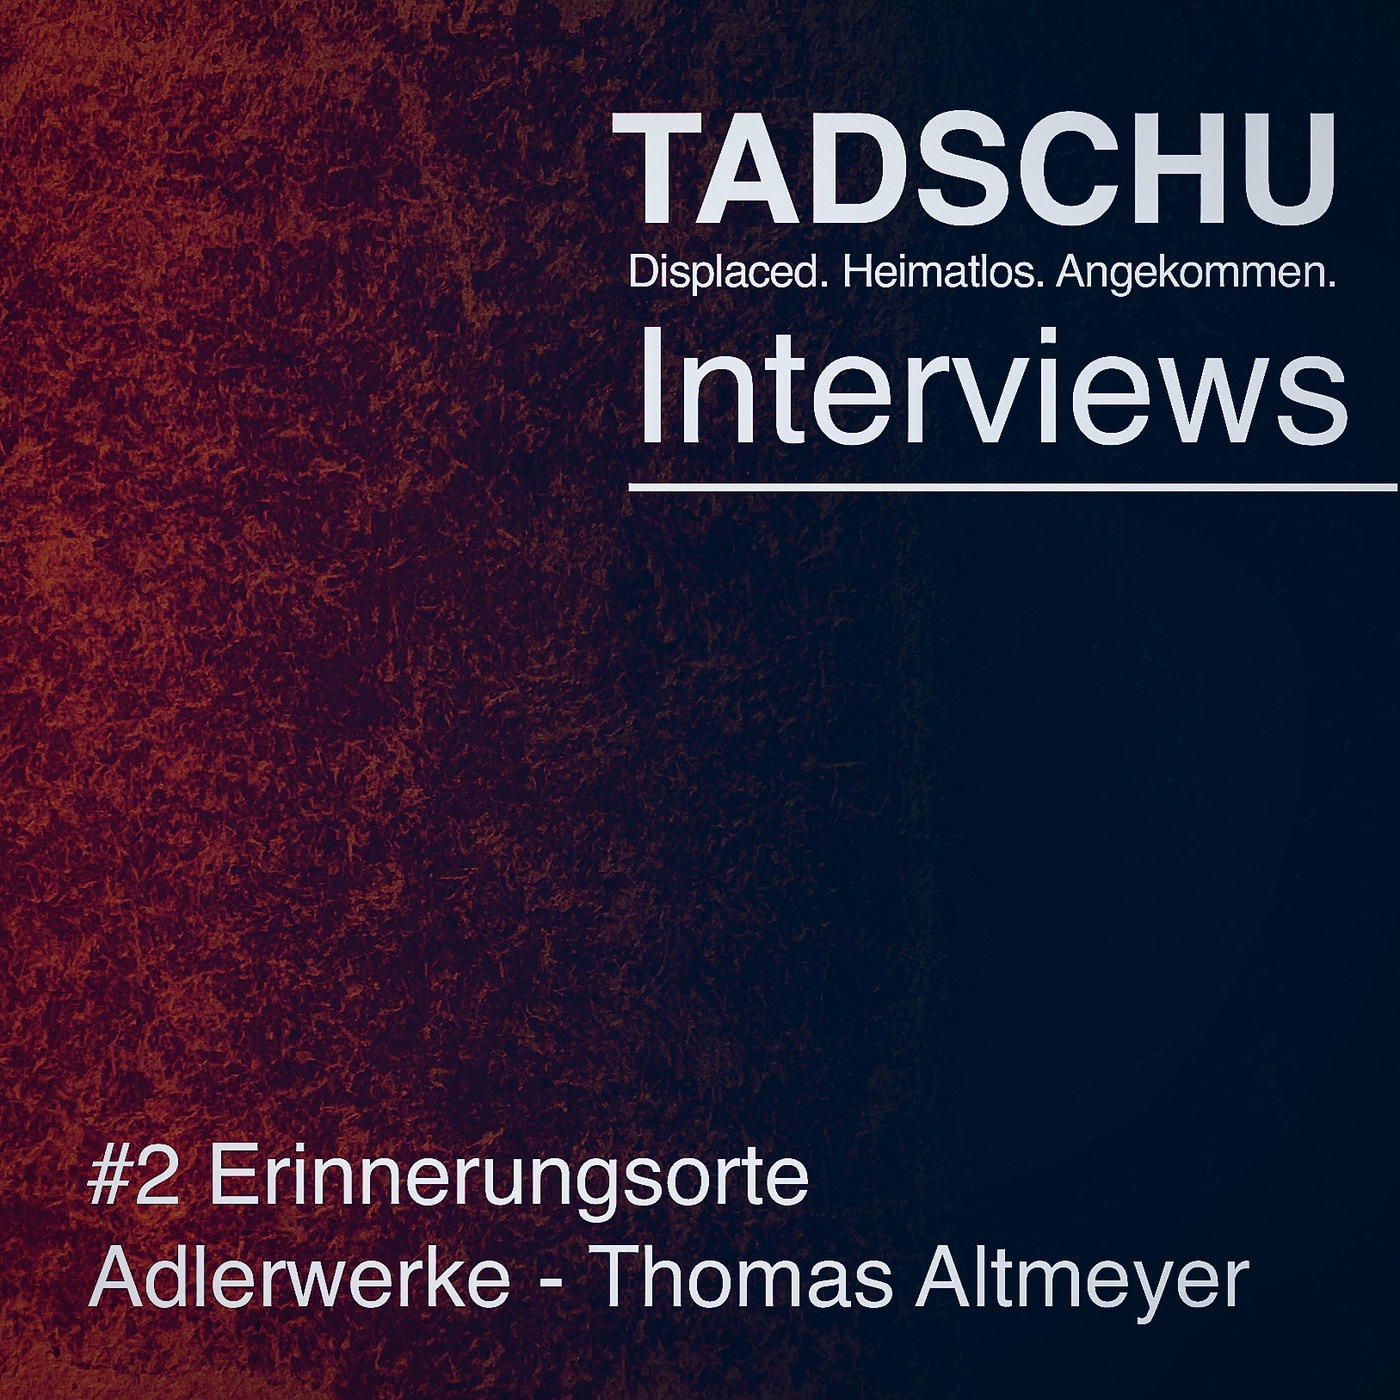 Tadschu Interviews - #2 Erinnerungsorte: Thomas Altmeyer